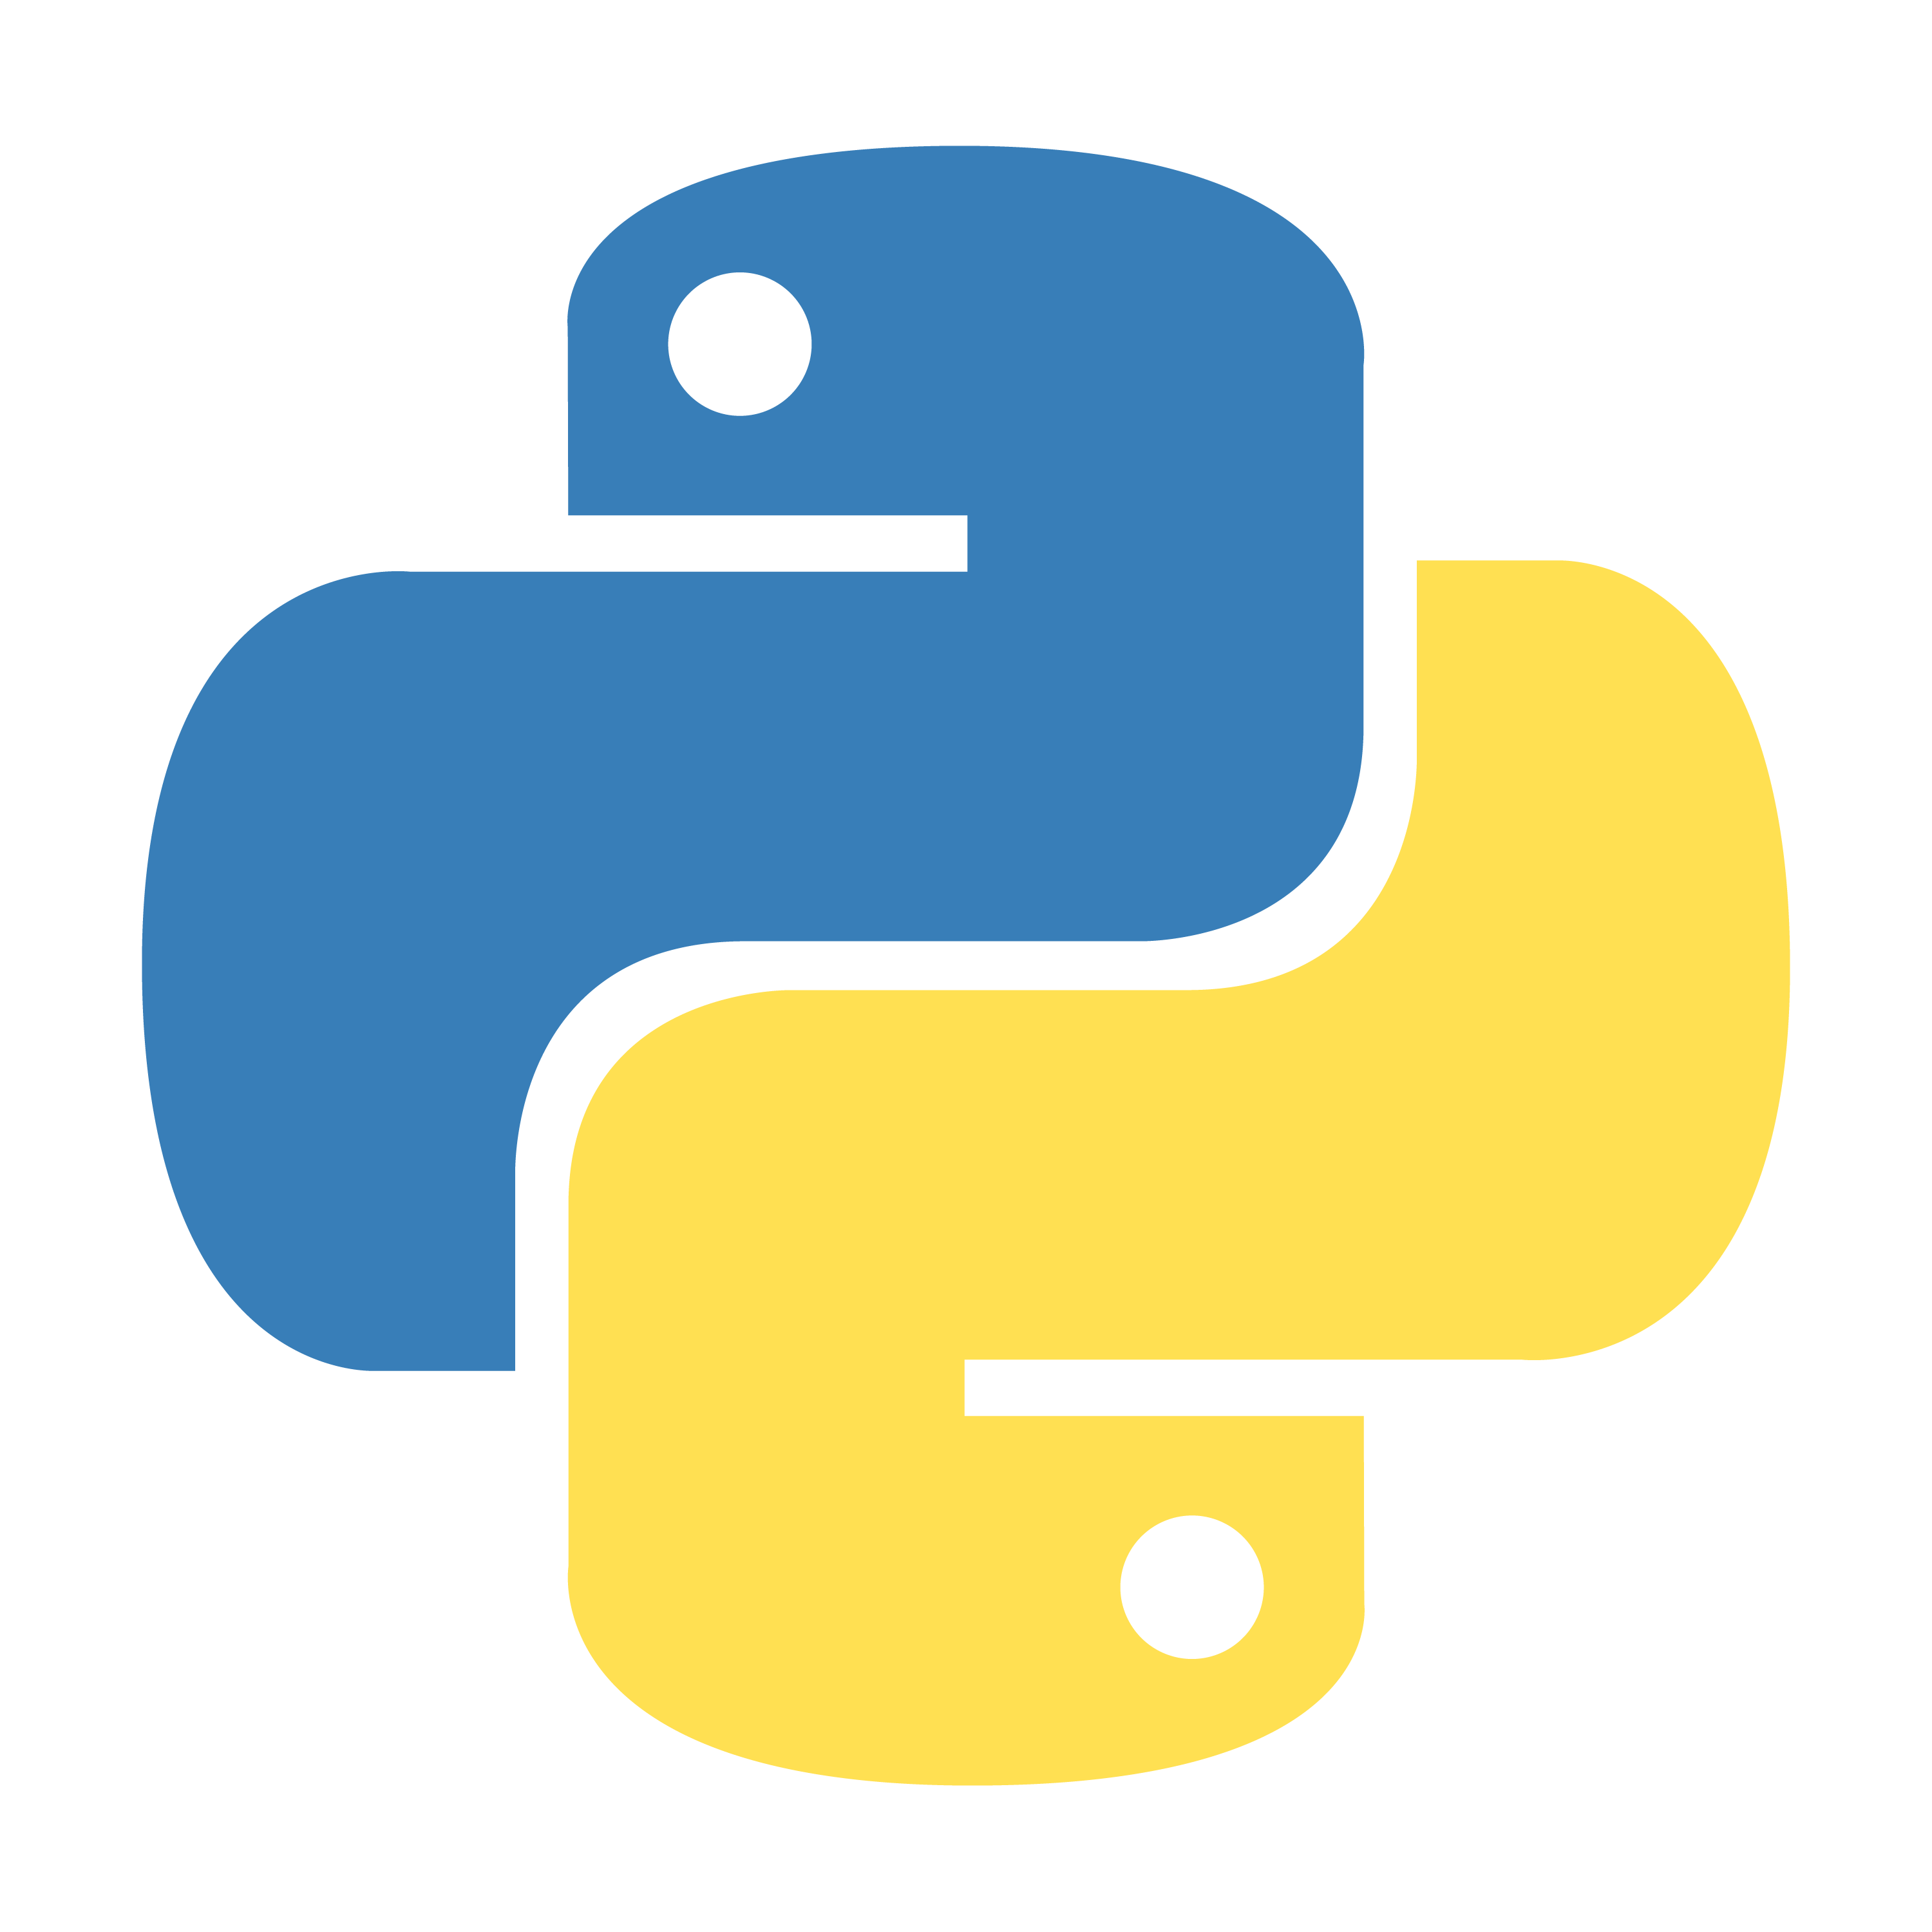 Питон язык программирования лого. Python logo без фона. Python 3. Значок питона.